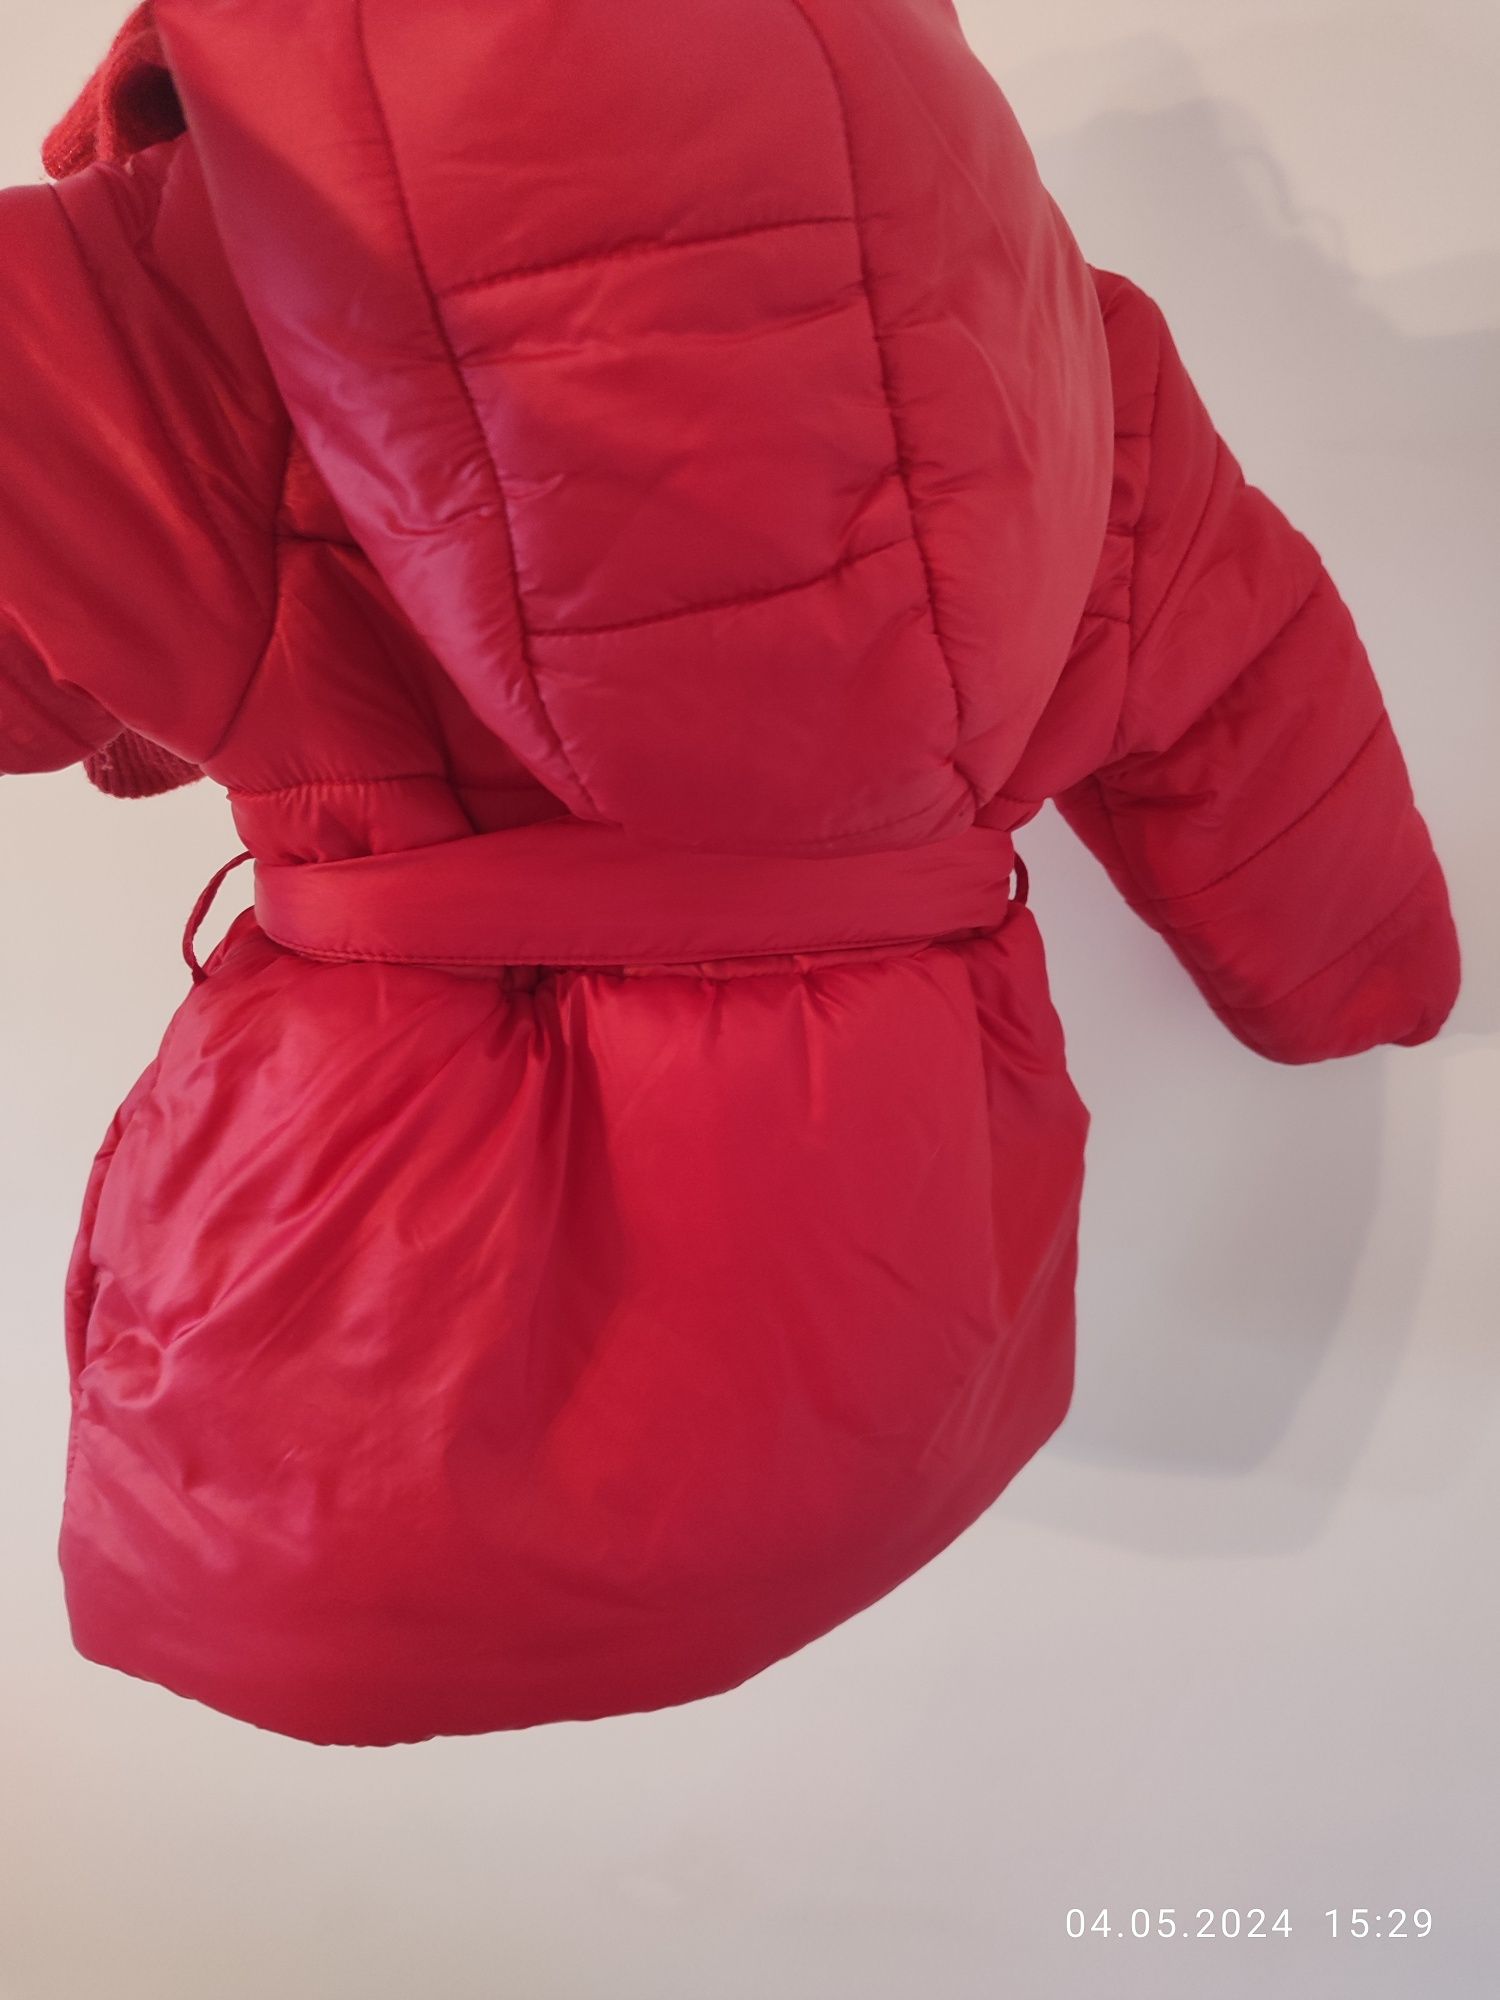 Курточка пуховик пальто для девочки 9-12 месяцев